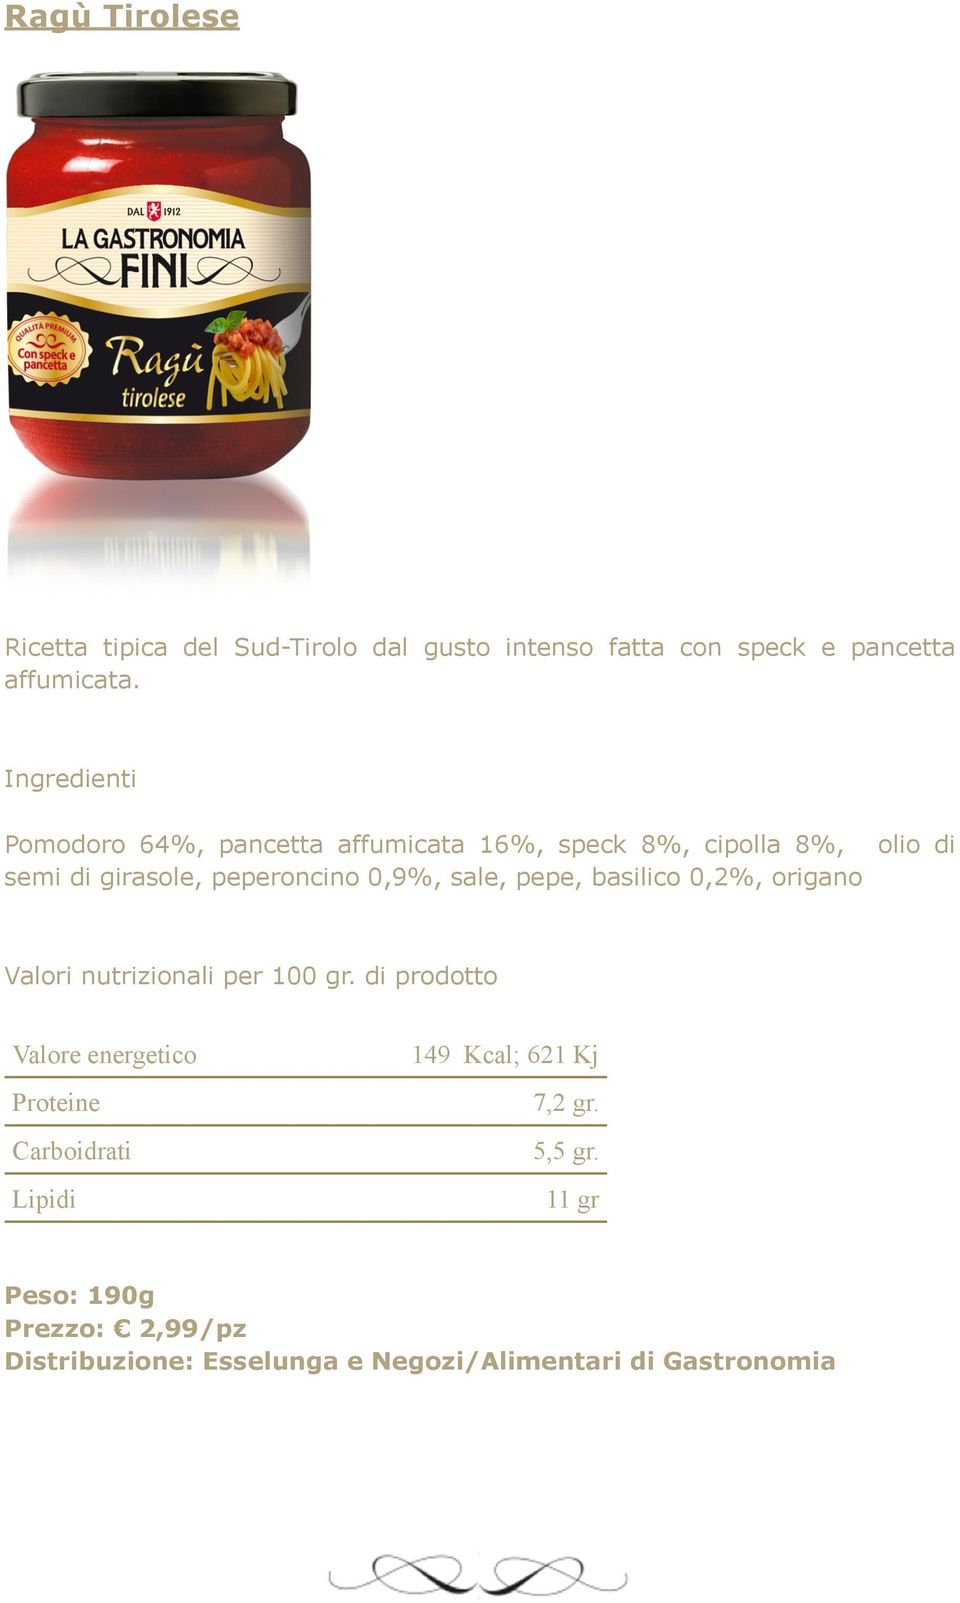 Pomodoro 64%, pancetta affumicata 16%, speck 8%, cipolla 8%, semi di girasole,